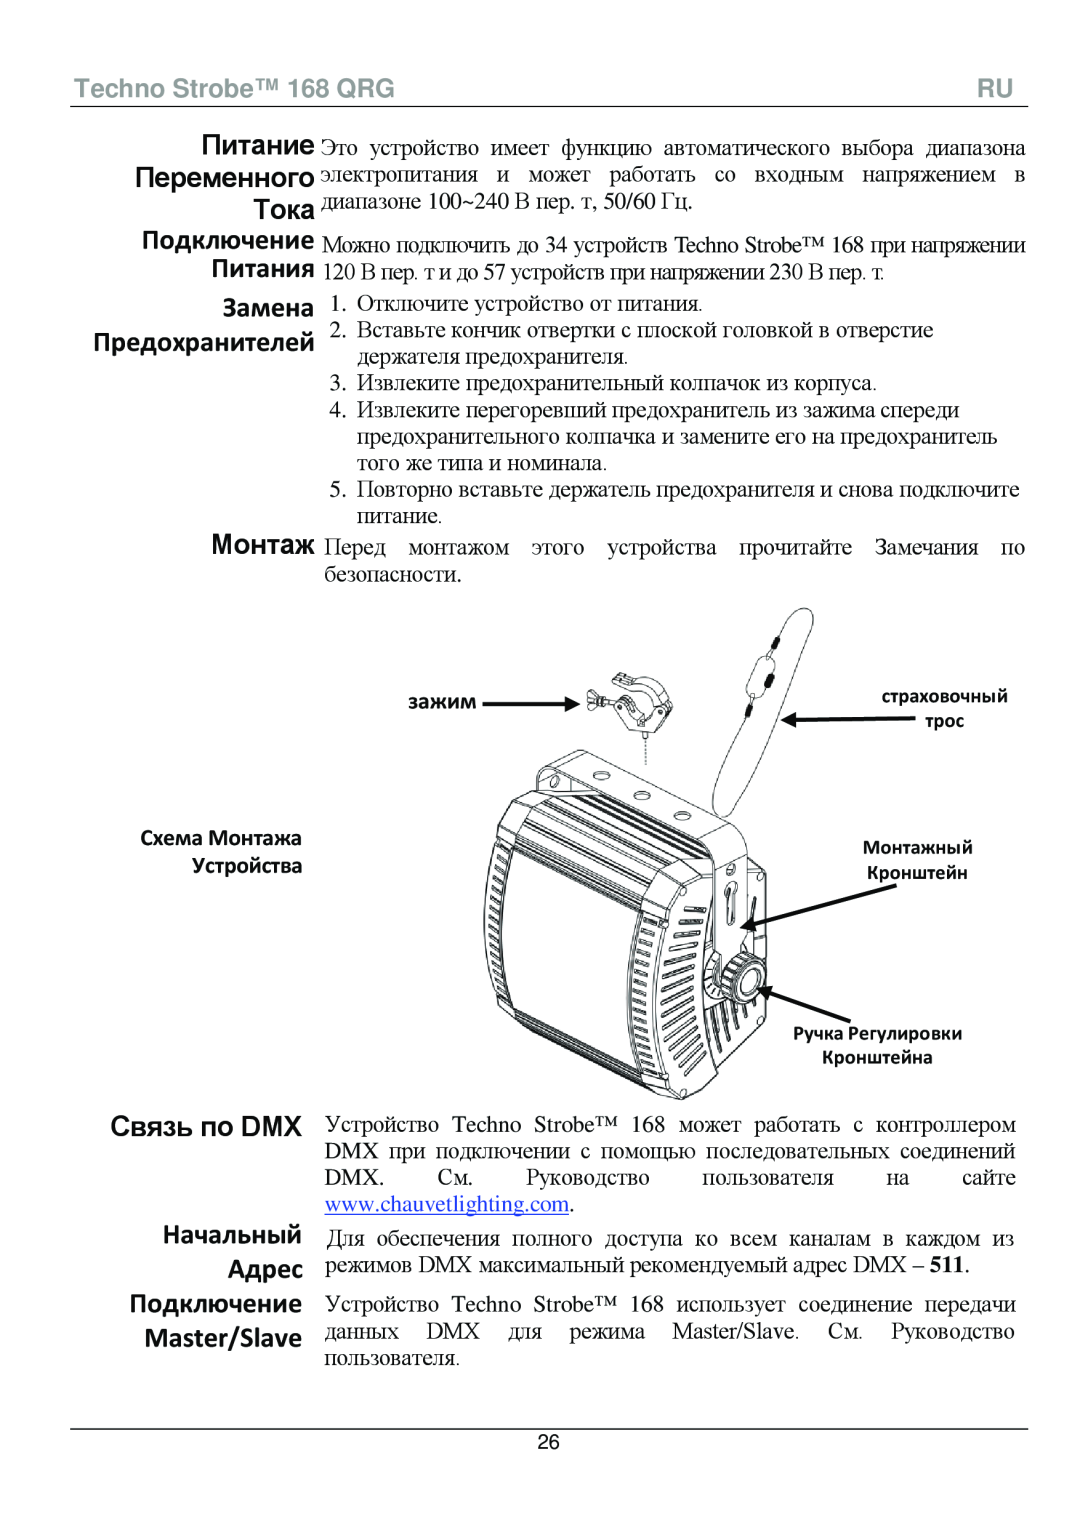 Chauvet manual Связь по DMX, Начальный Адрес Подключение Master/Slave, зажим, Устройства, Techno Strobe 168 QRG 